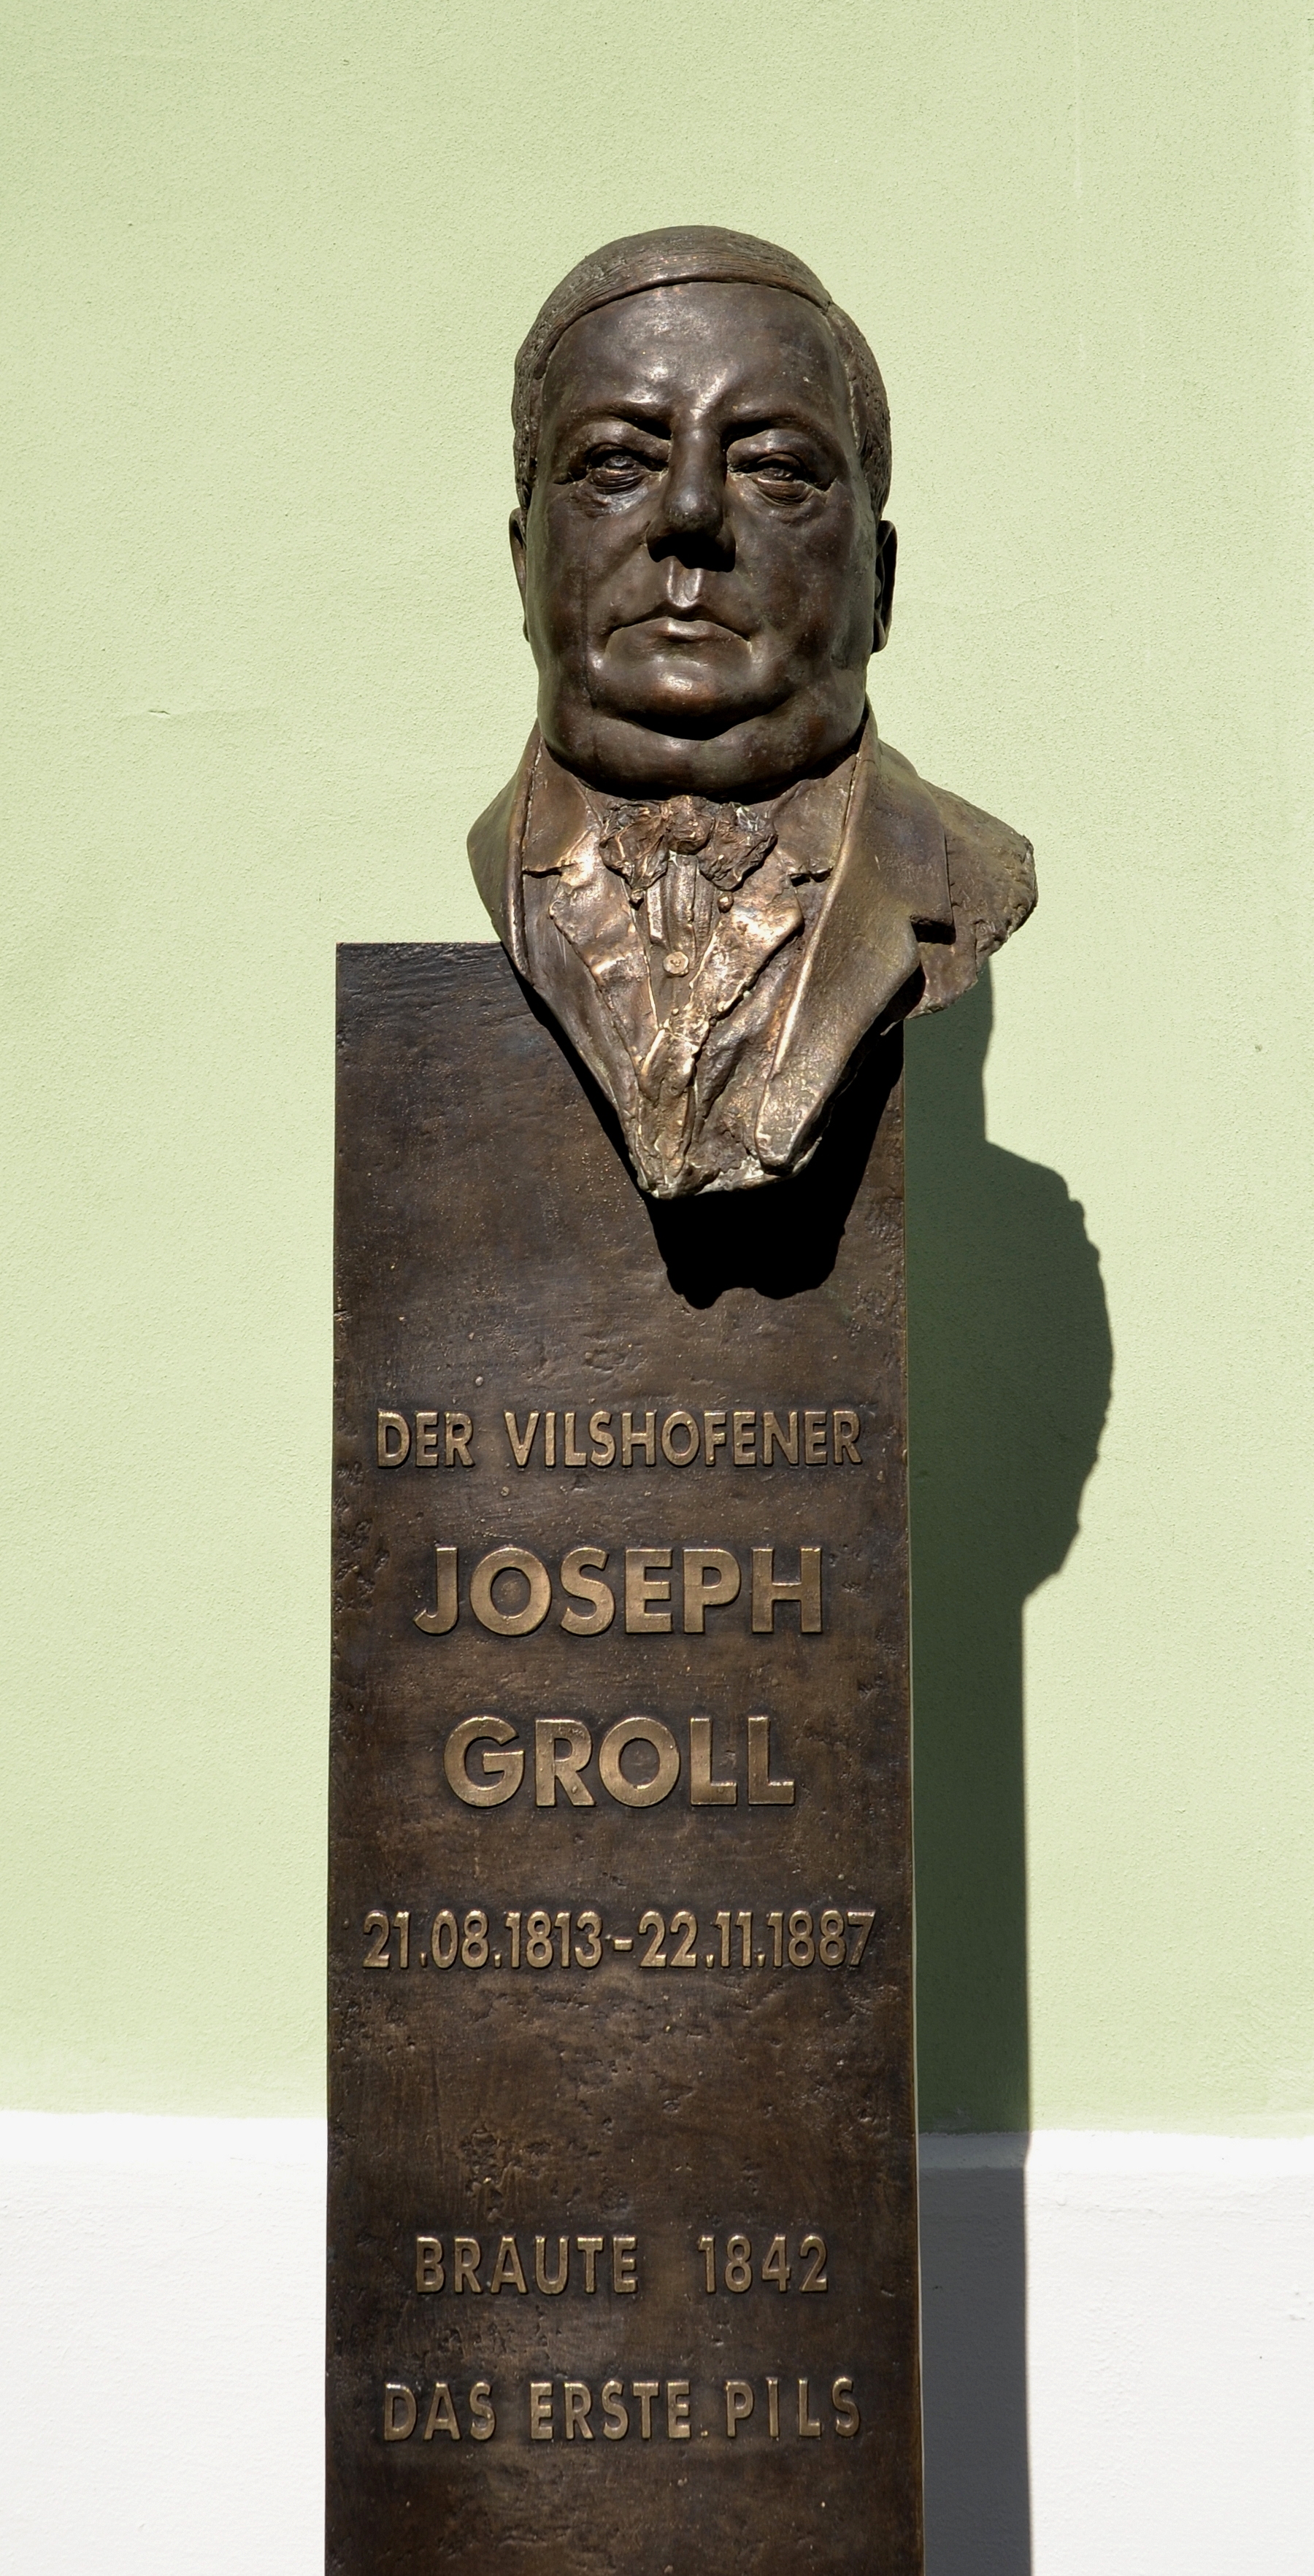 Joseph-Groll-Büste in Vilshofen an der Donau - komplett